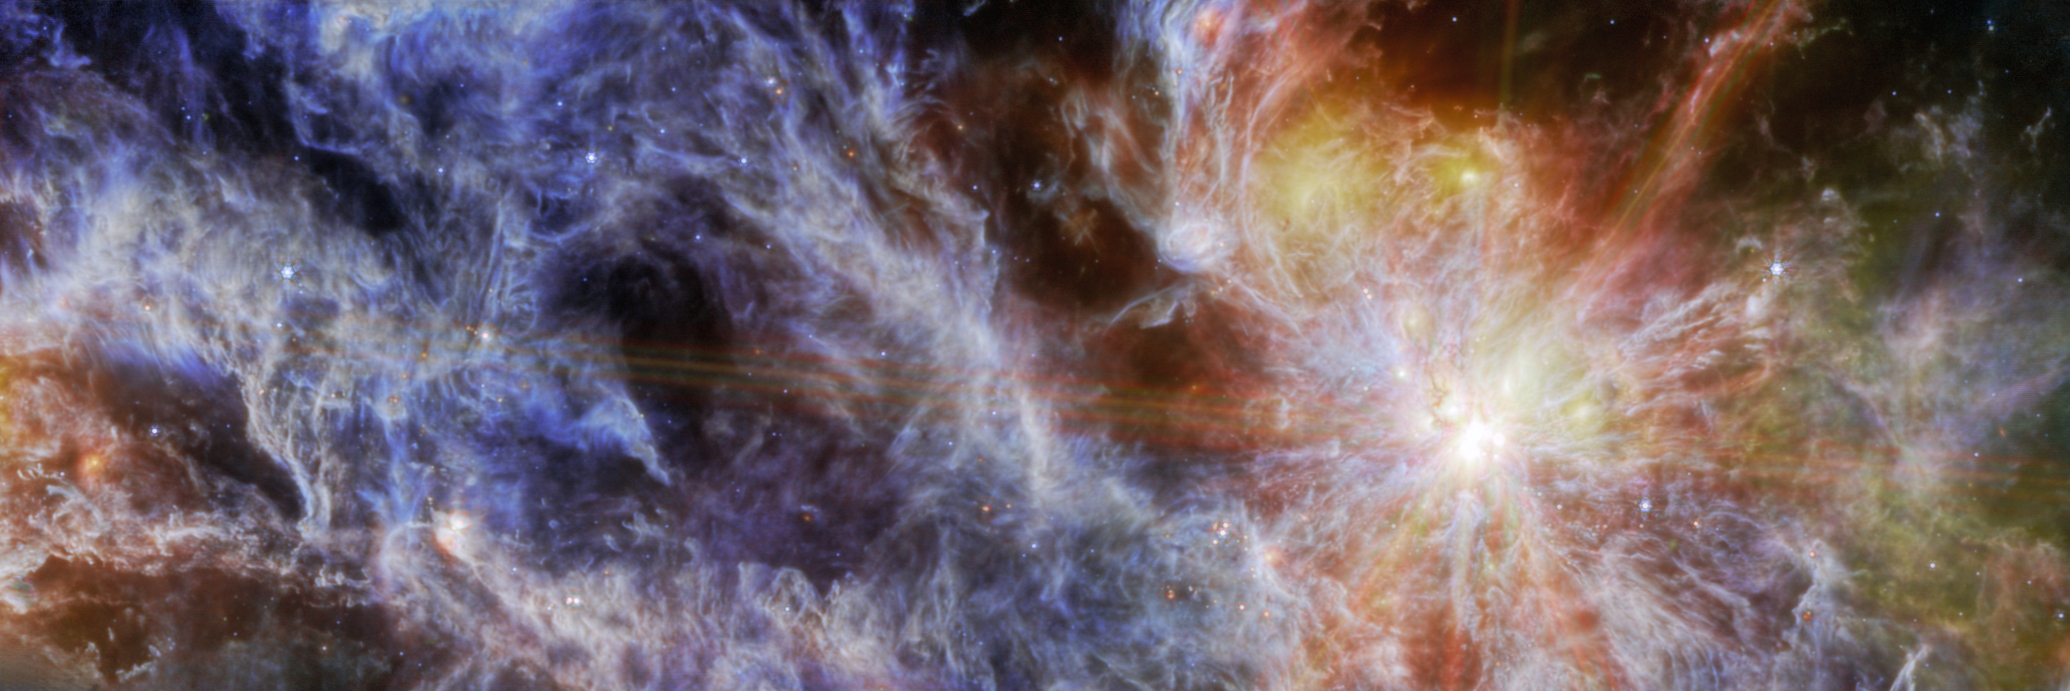 Na ilustracji: Obszar gwiazdotwórczy N79 (S1) w Wielkim Obłoku Magellana - fotografia w podczerwieni (barwy w zakresie λ = 7,7 – 21 μm) uzyskana za pomocą Teleskopu Webba i instrumentu MIRI. Widok został inaczej skadrowany niż ilustracja tytułowa, ale zachowano orientację. Źródło: NASA/ESA/CSA/M. Meixner